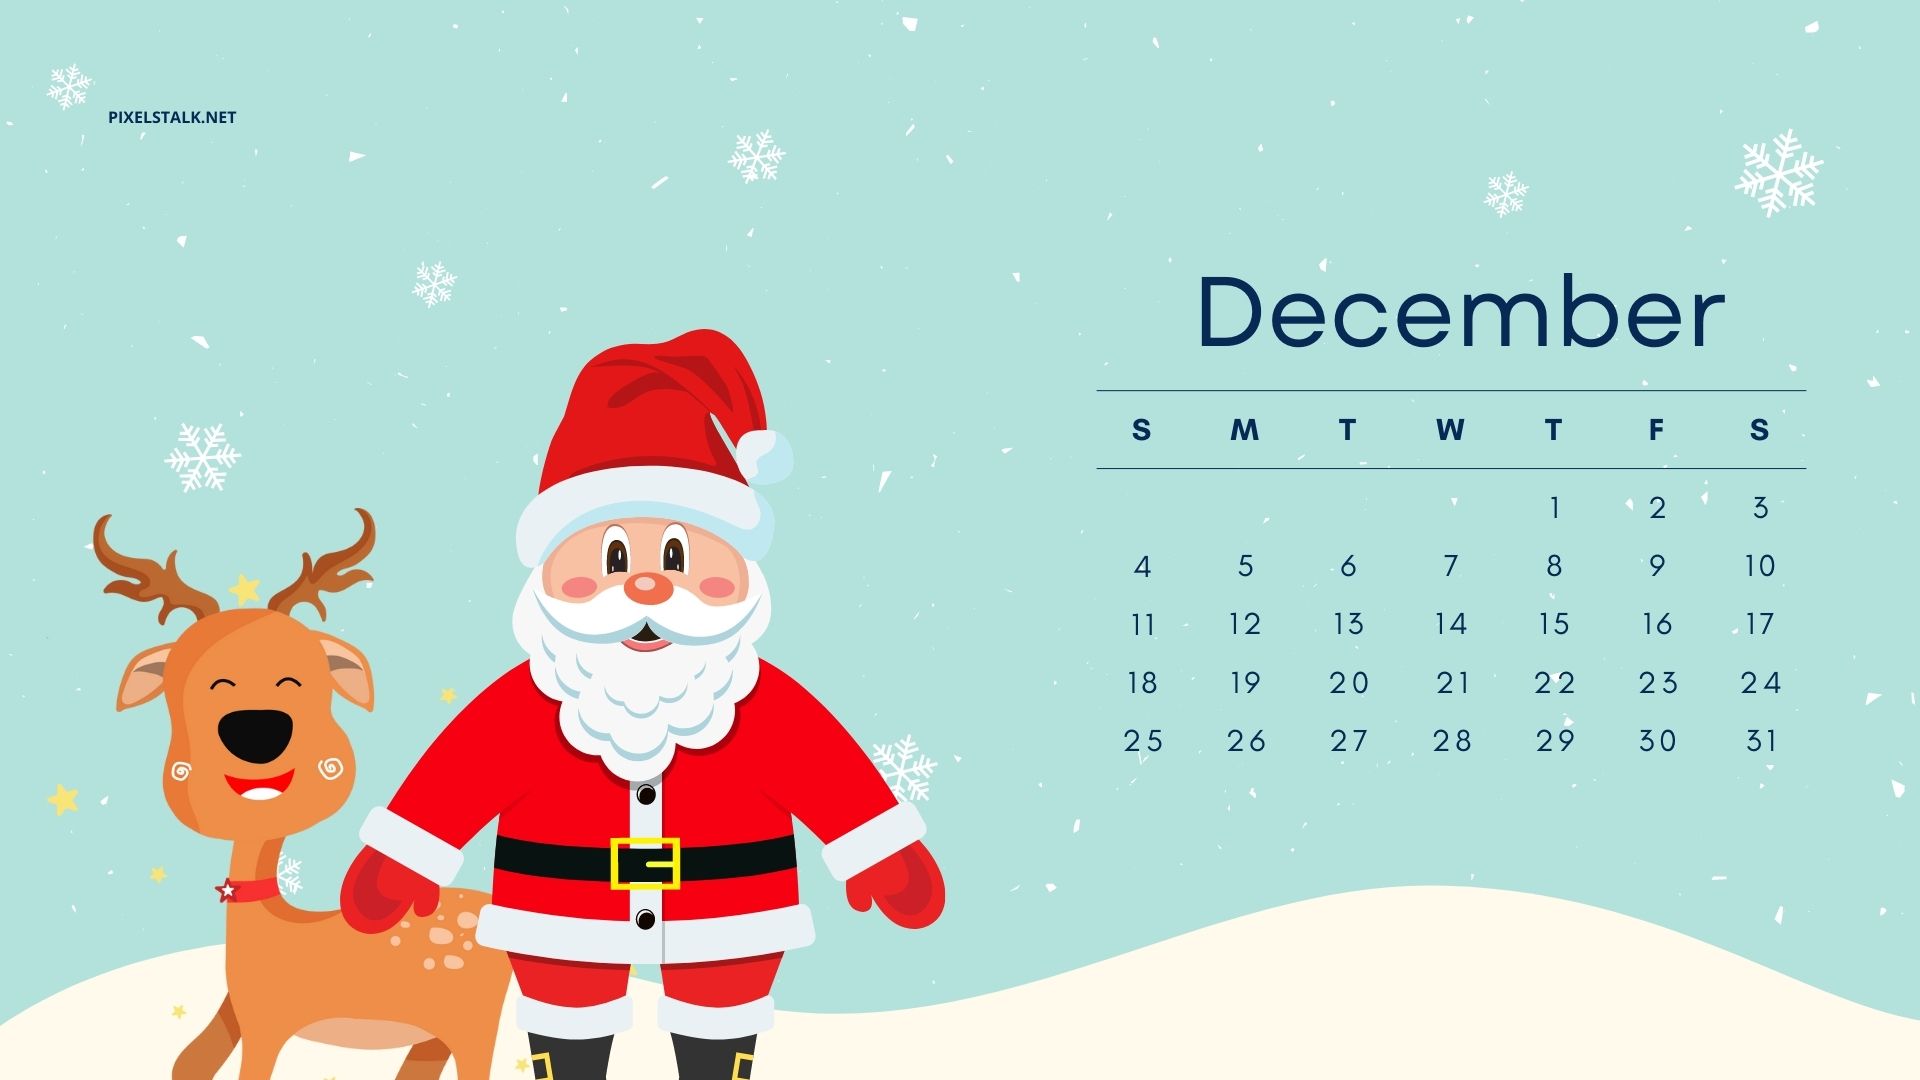 Hãy xem lịch tháng 12 năm 2022 để chuẩn bị cho một mùa lễ hội thật đầy đủ và đúng thời gian! Đây là cơ hội để bạn lên kế hoạch cho một kỳ nghỉ cuối năm hoàn hảo với gia đình và bạn bè. Xem ngay để không bỏ lỡ bất kỳ sự kiện nào trong tháng lễ quan trọng này.